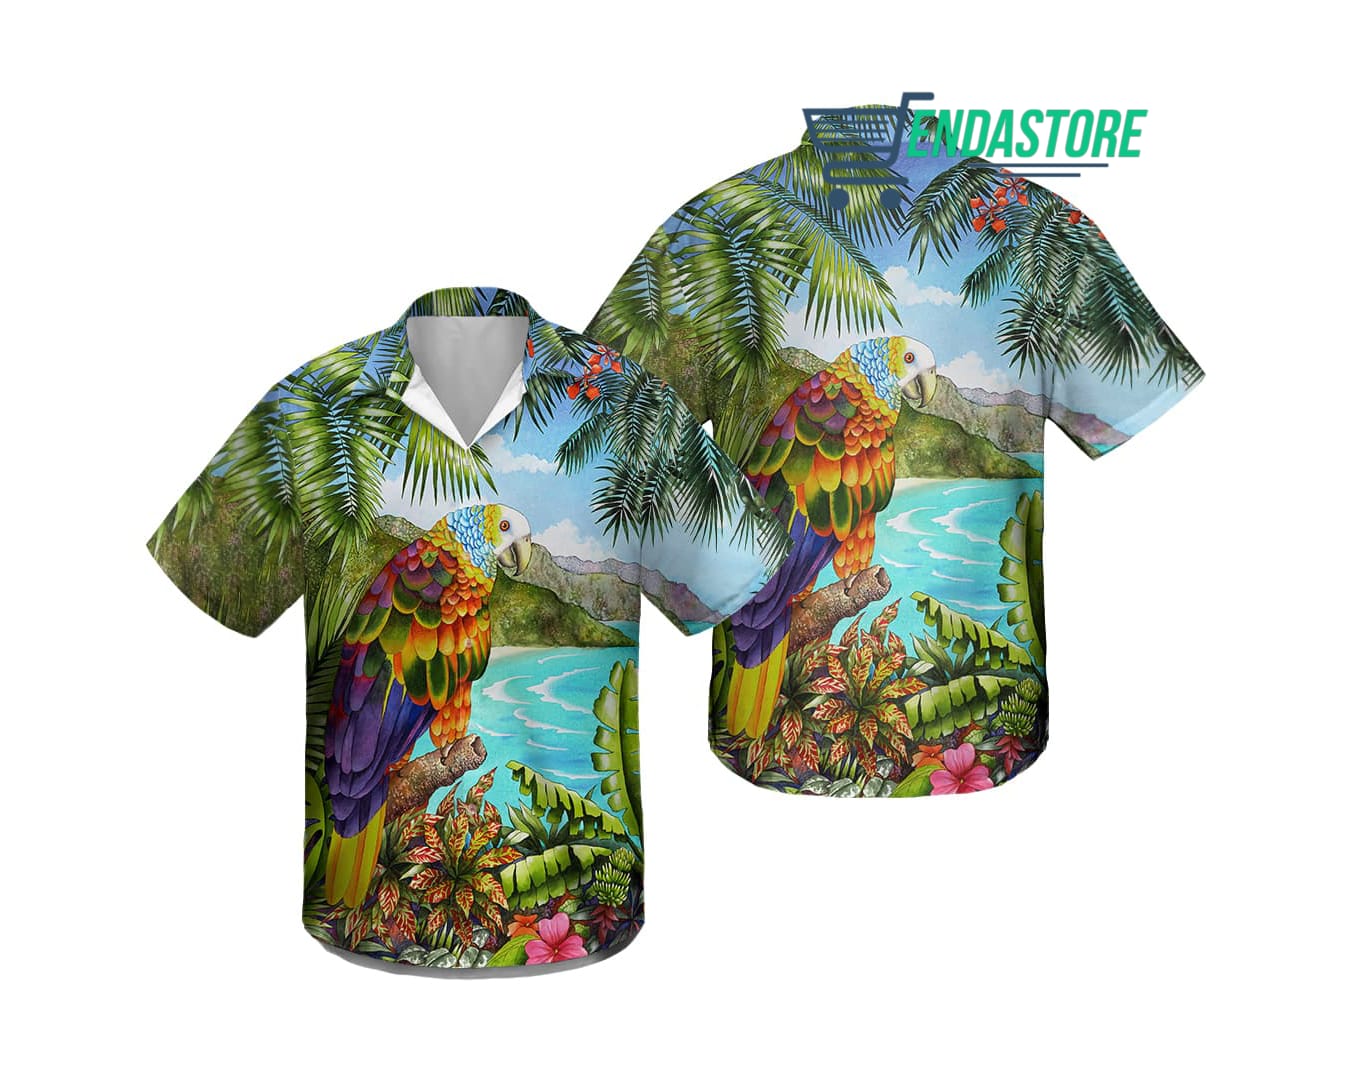 Endastore New York Yankees scenic Hawaiian Shirt